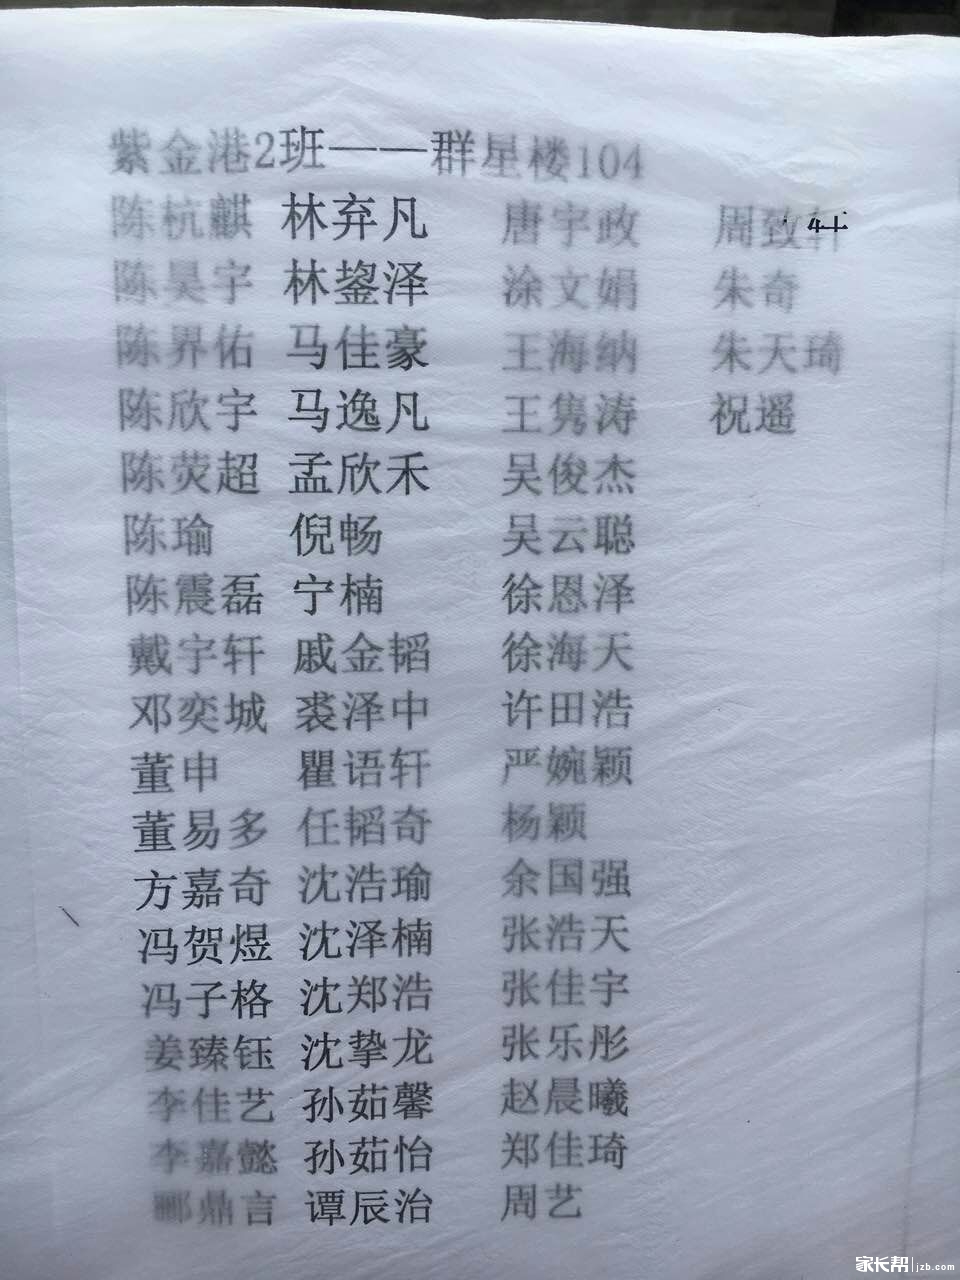 2016年杭州学军中学紫金港校区实验班分班名单2